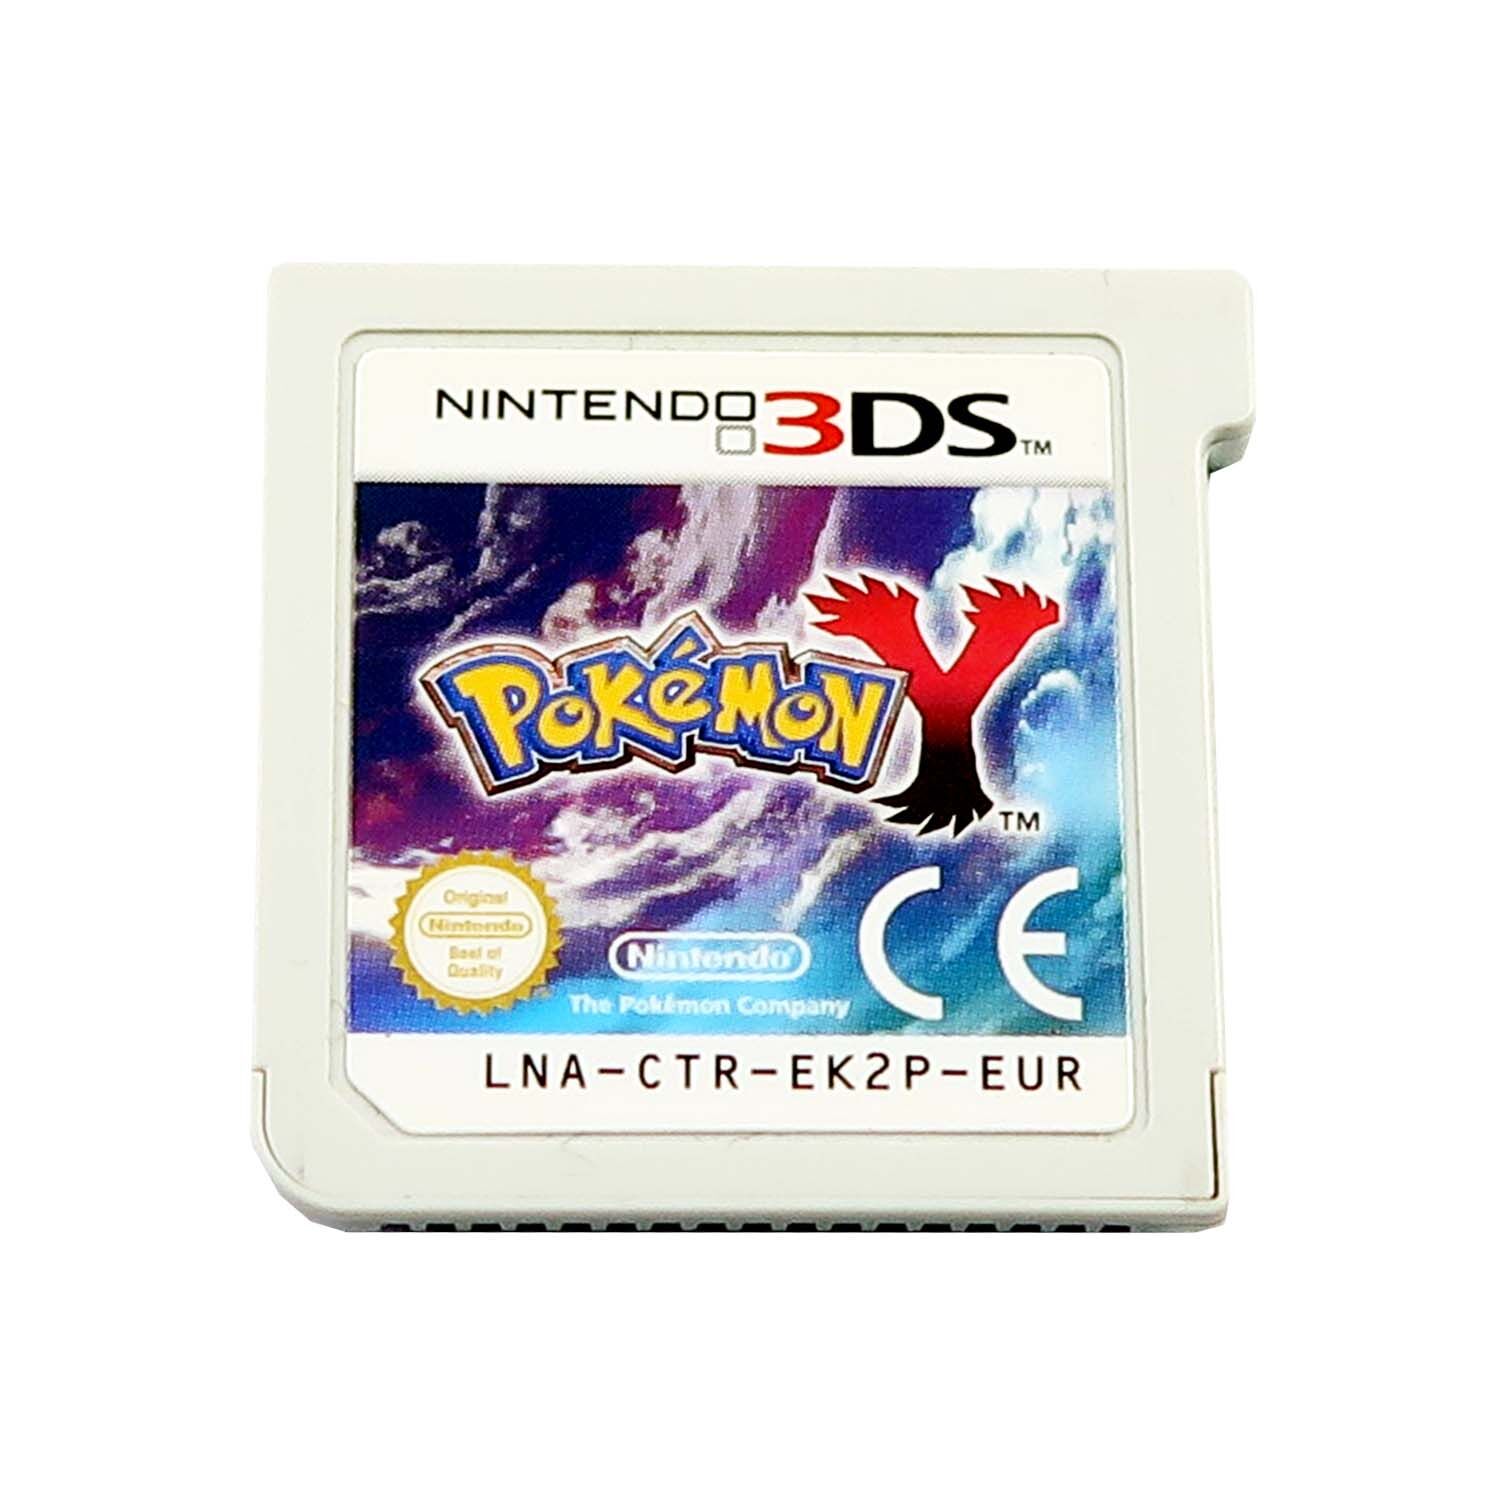 Pokémon Y Edition - Nintendo 3DS